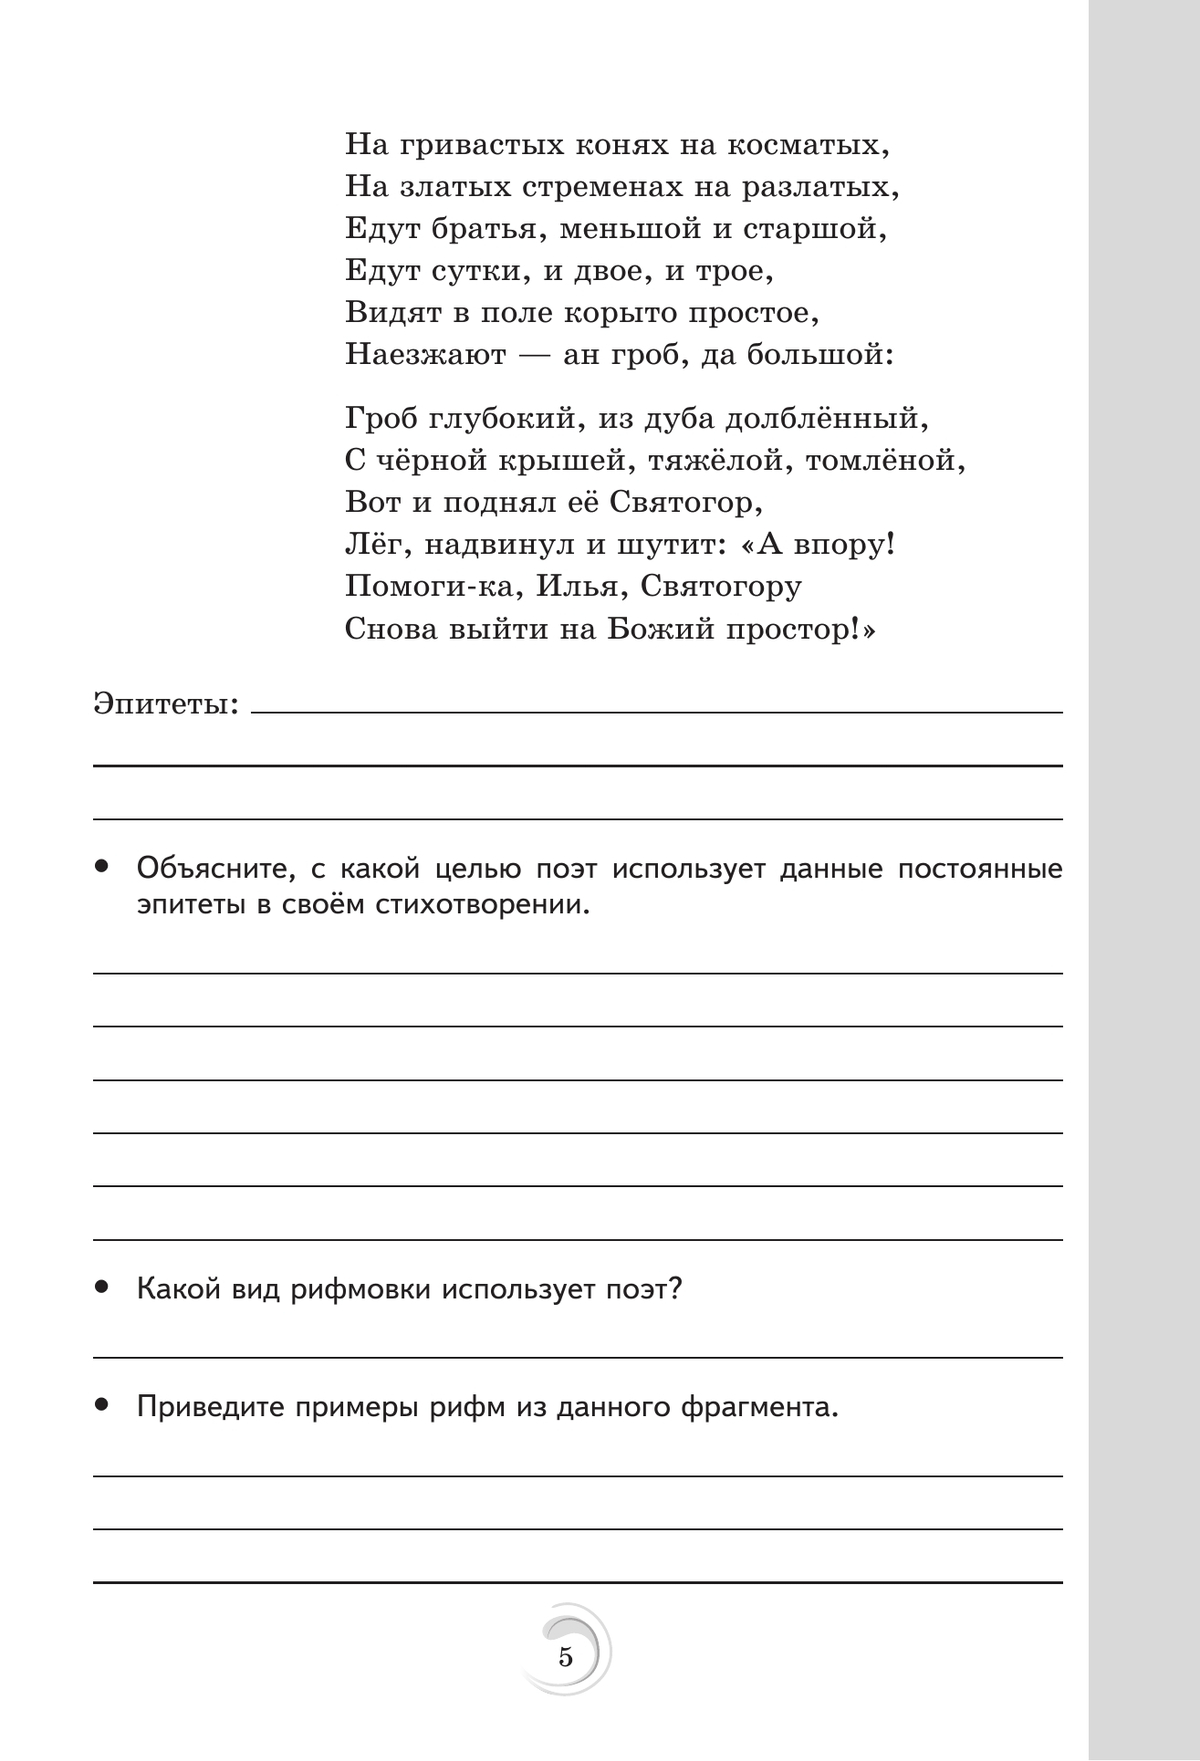 Родная русская литература. 6 класс. Практикум 8